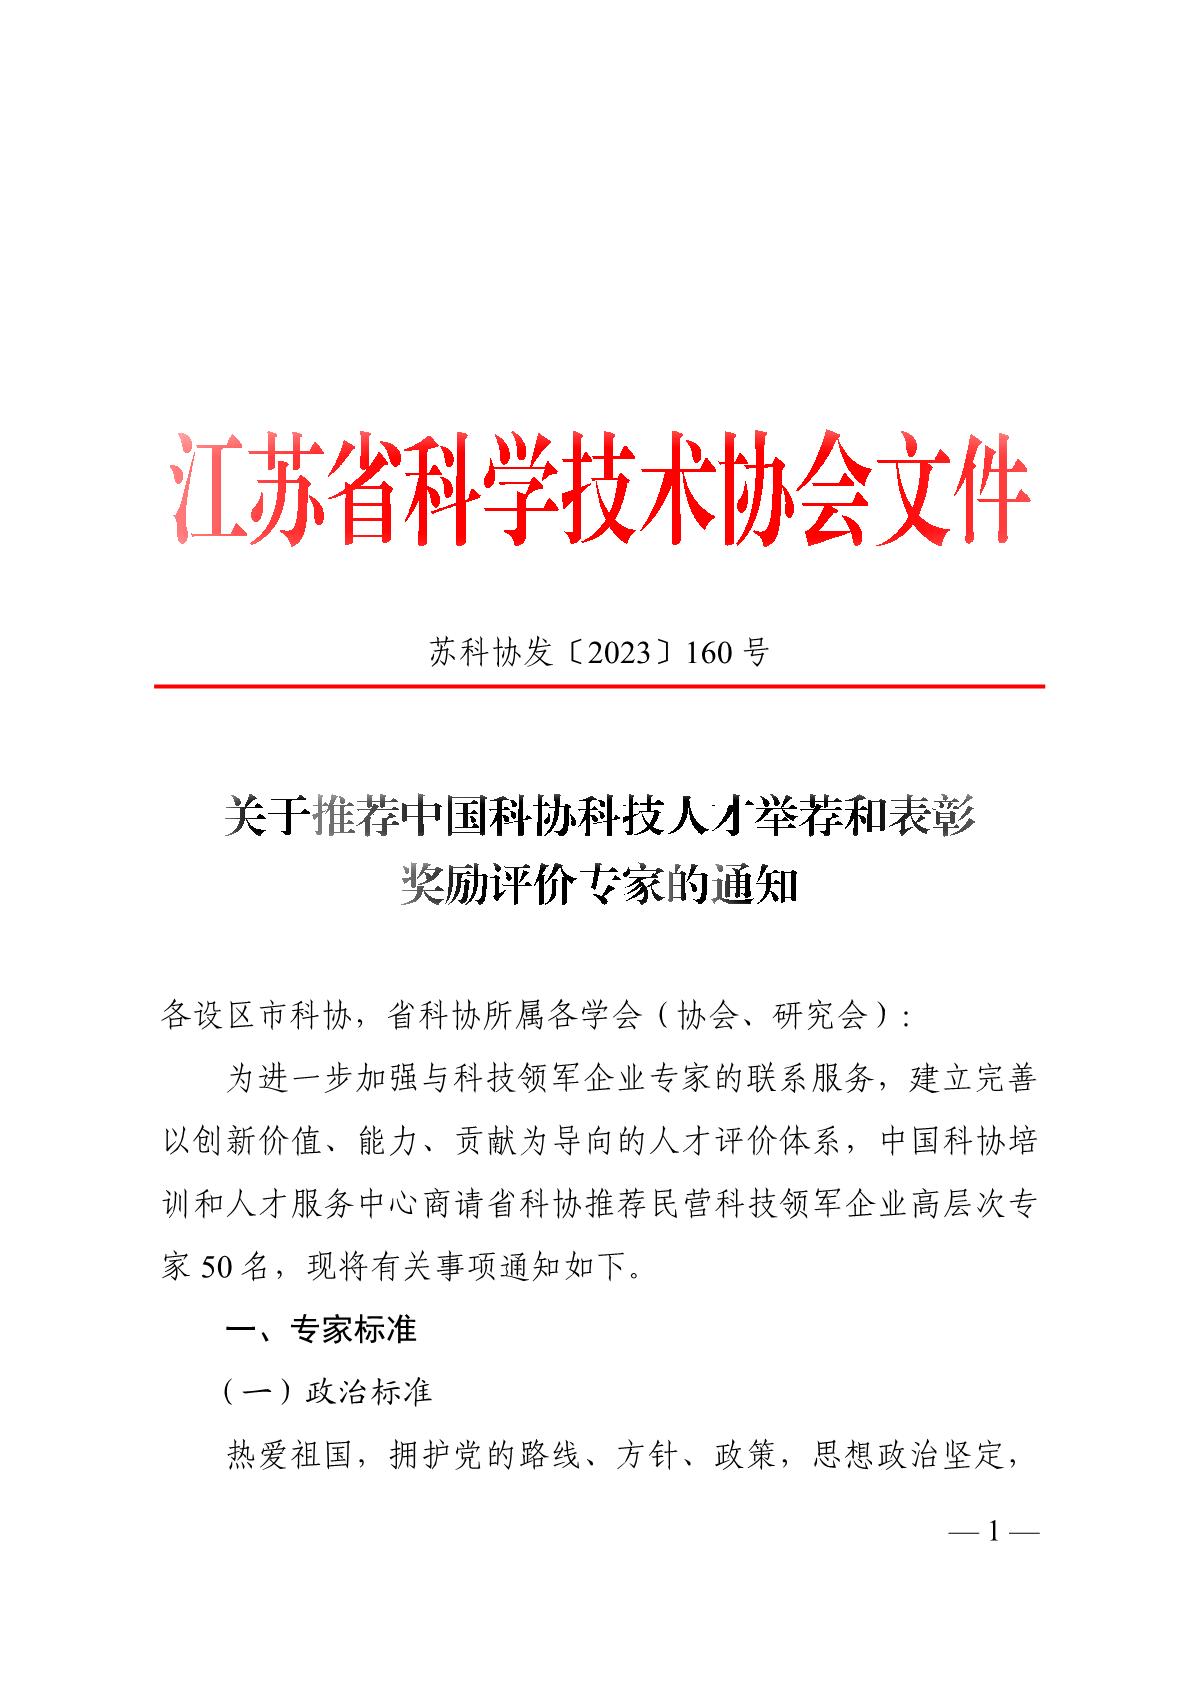 关于推荐中国科协科技人才举荐和表彰奖励评价专家的通知_1.JPG